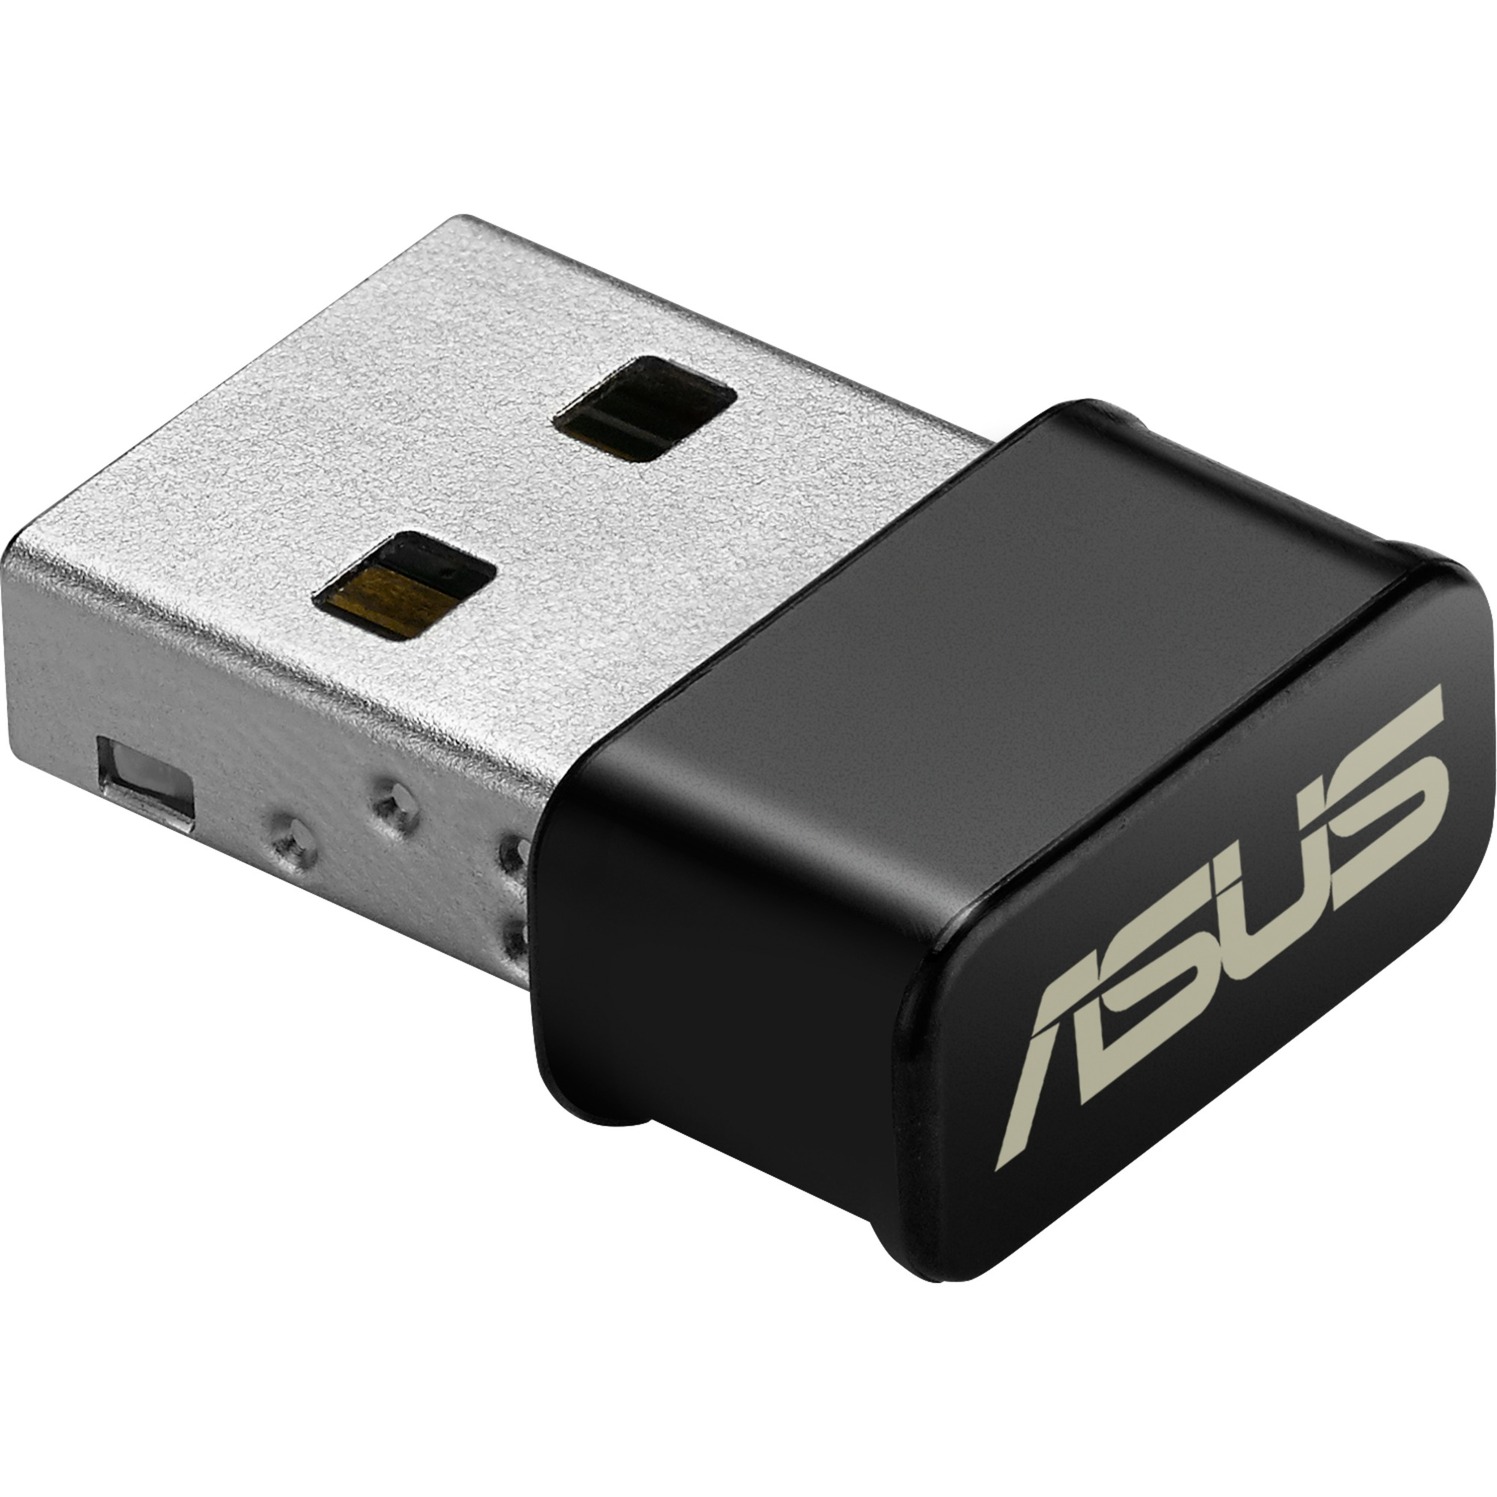 USB-AC53 AC1300, WLAN-Adapter von Asus